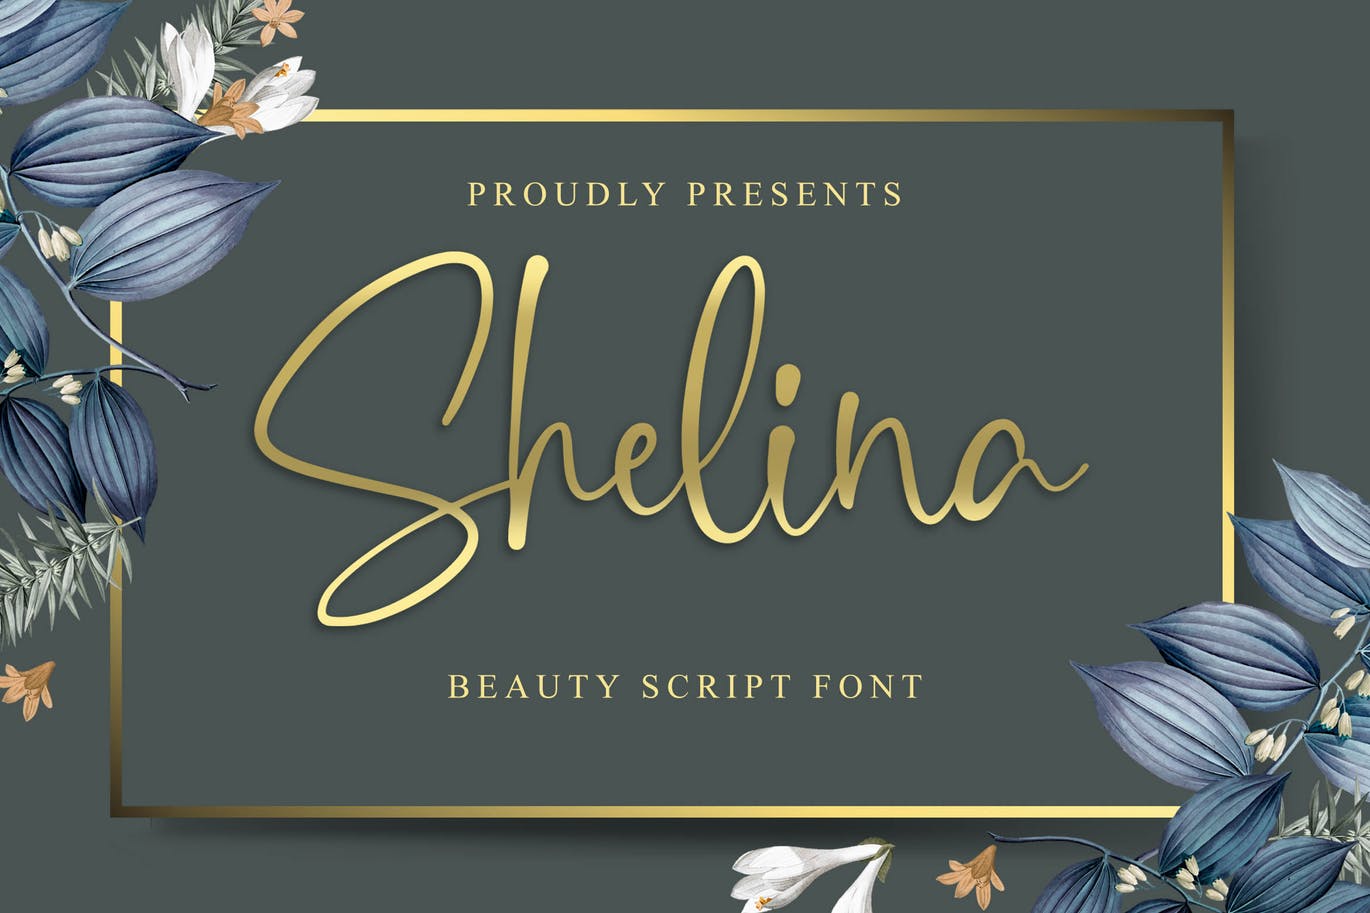 英文连笔书法字体第一素材精选 Shelina Beauty Script Font插图